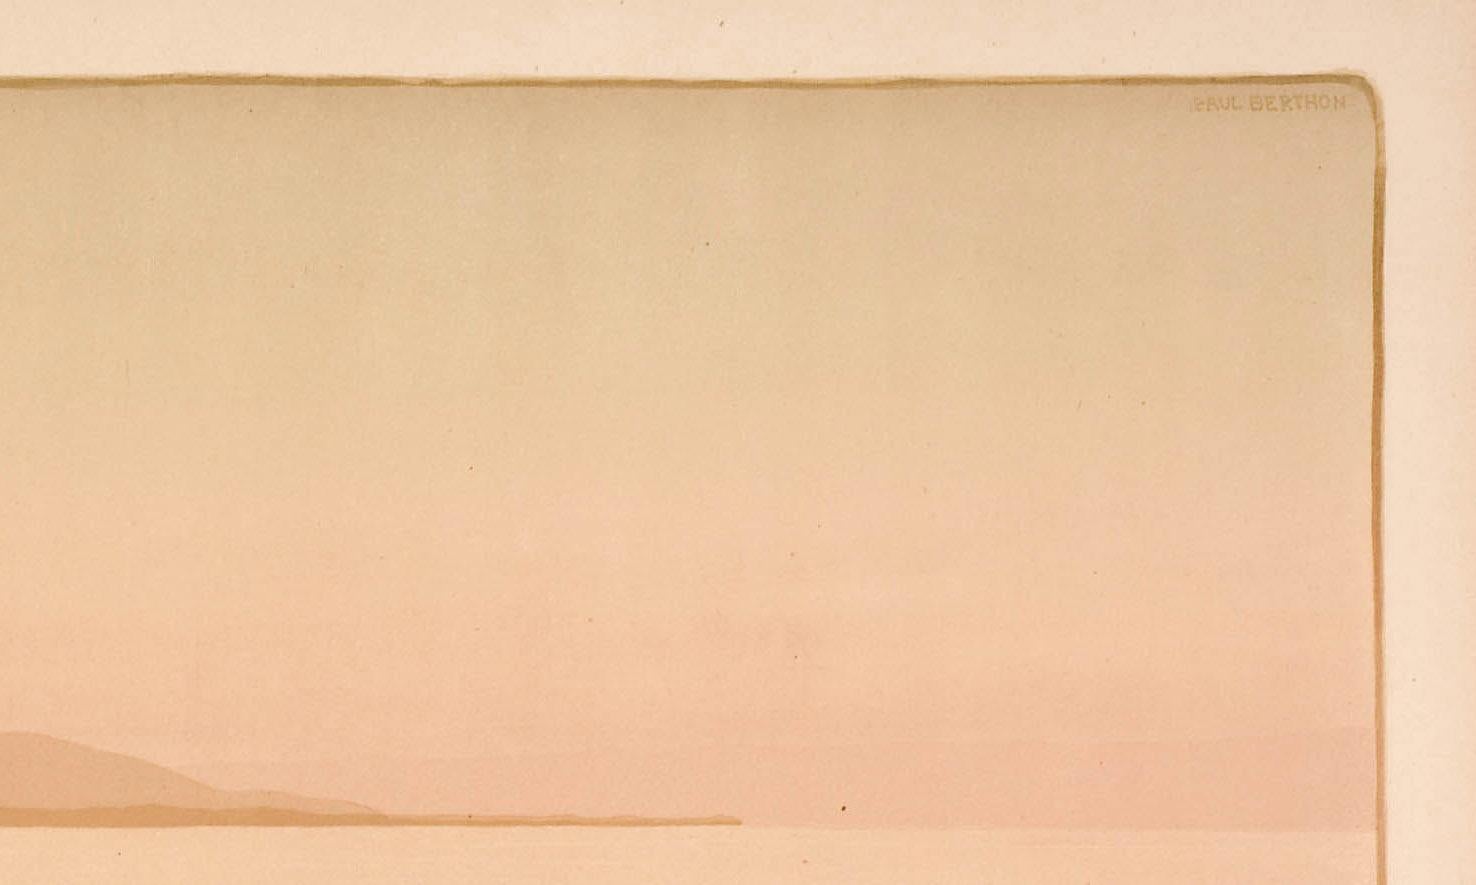 La Pointe de Bretteville
Lithographie en couleurs, 1899
Signé dans la pierre en haut à droite
Éditeur : Sagot, Paris
Edition : Edition : environ 200 (par Arwas)
Références et expositions :
Arwas 33 2ème état B
Feuille : 13 1/4 X 25 5/8